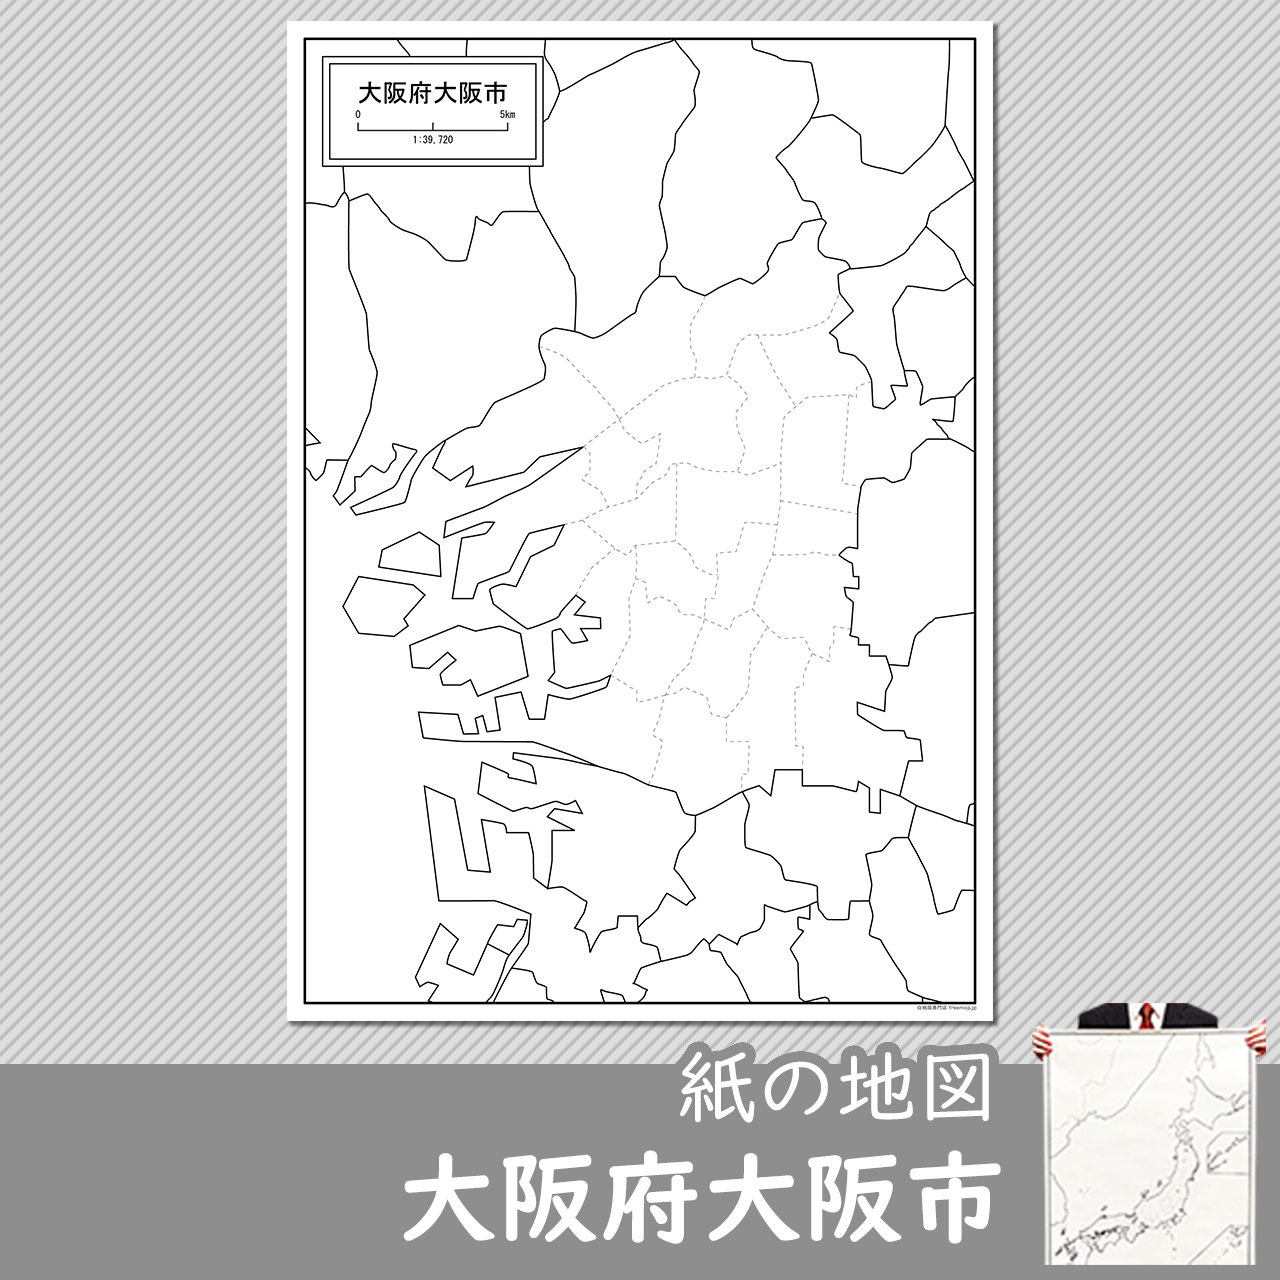 大阪府大阪市の紙の白地図のサムネイル